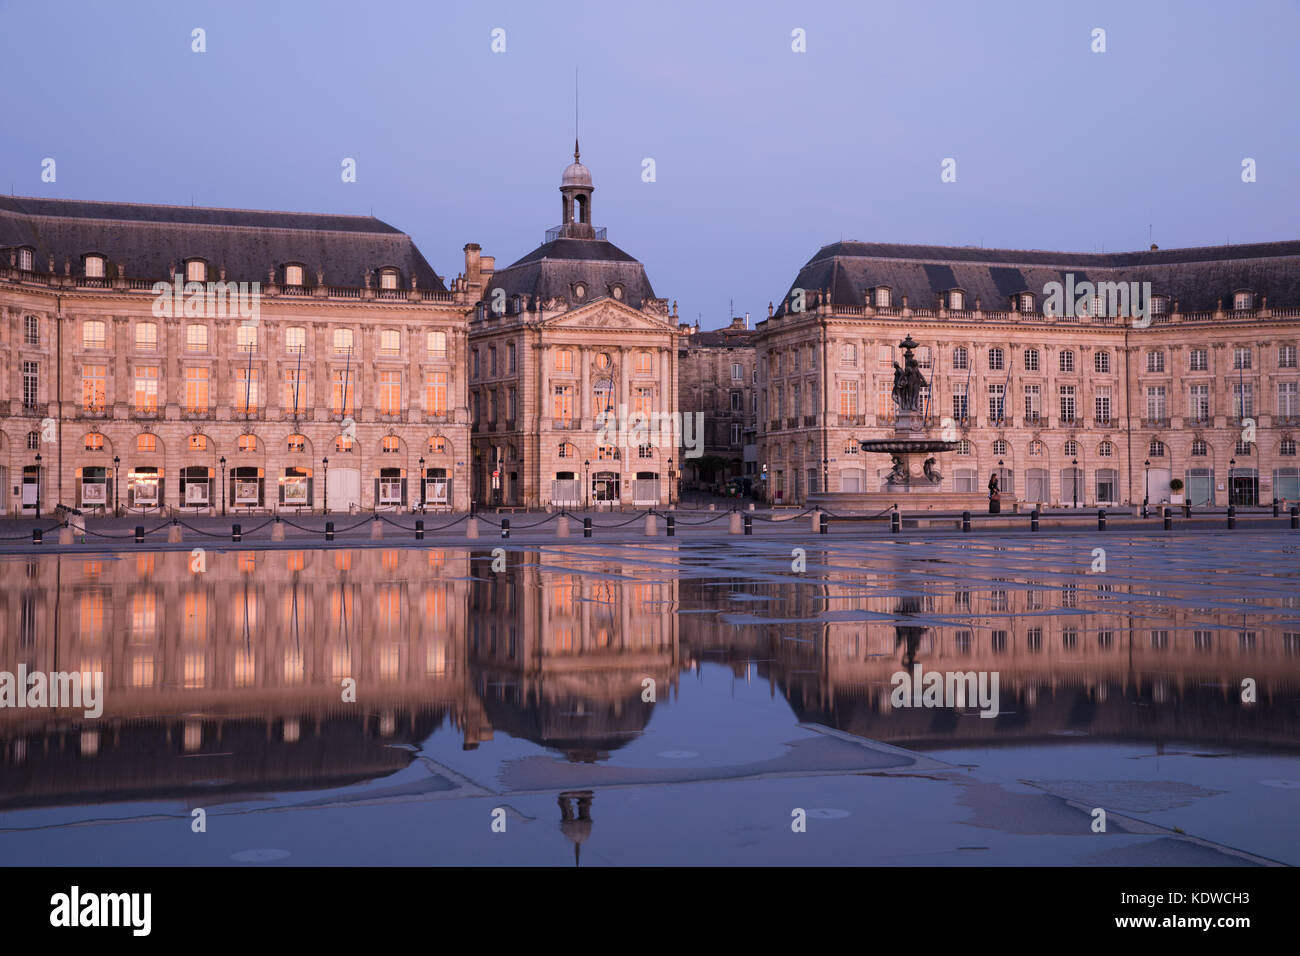 Miroir d'eau at dawn, Place de la Bourse, Bordeaux, Acquitaine, France Stock Photo